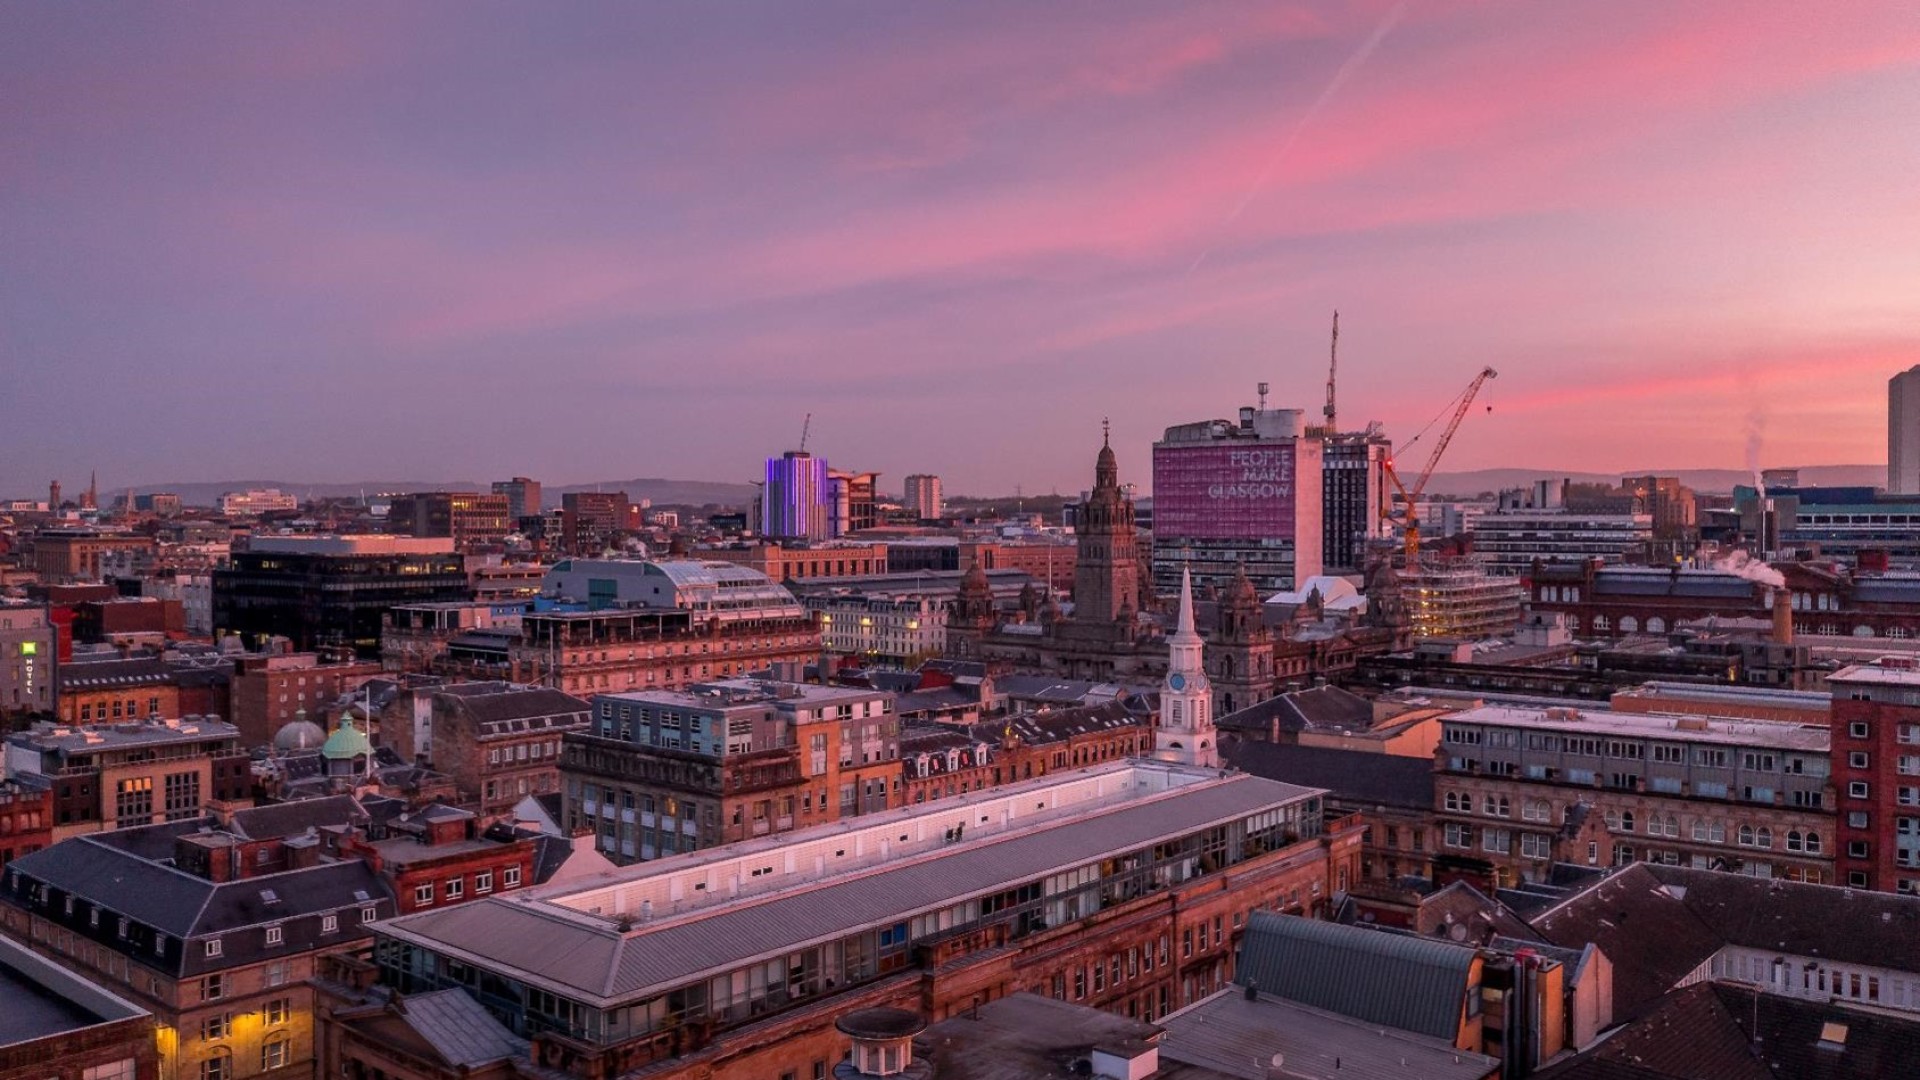 Glasgow's Merchant City skyline at dawn